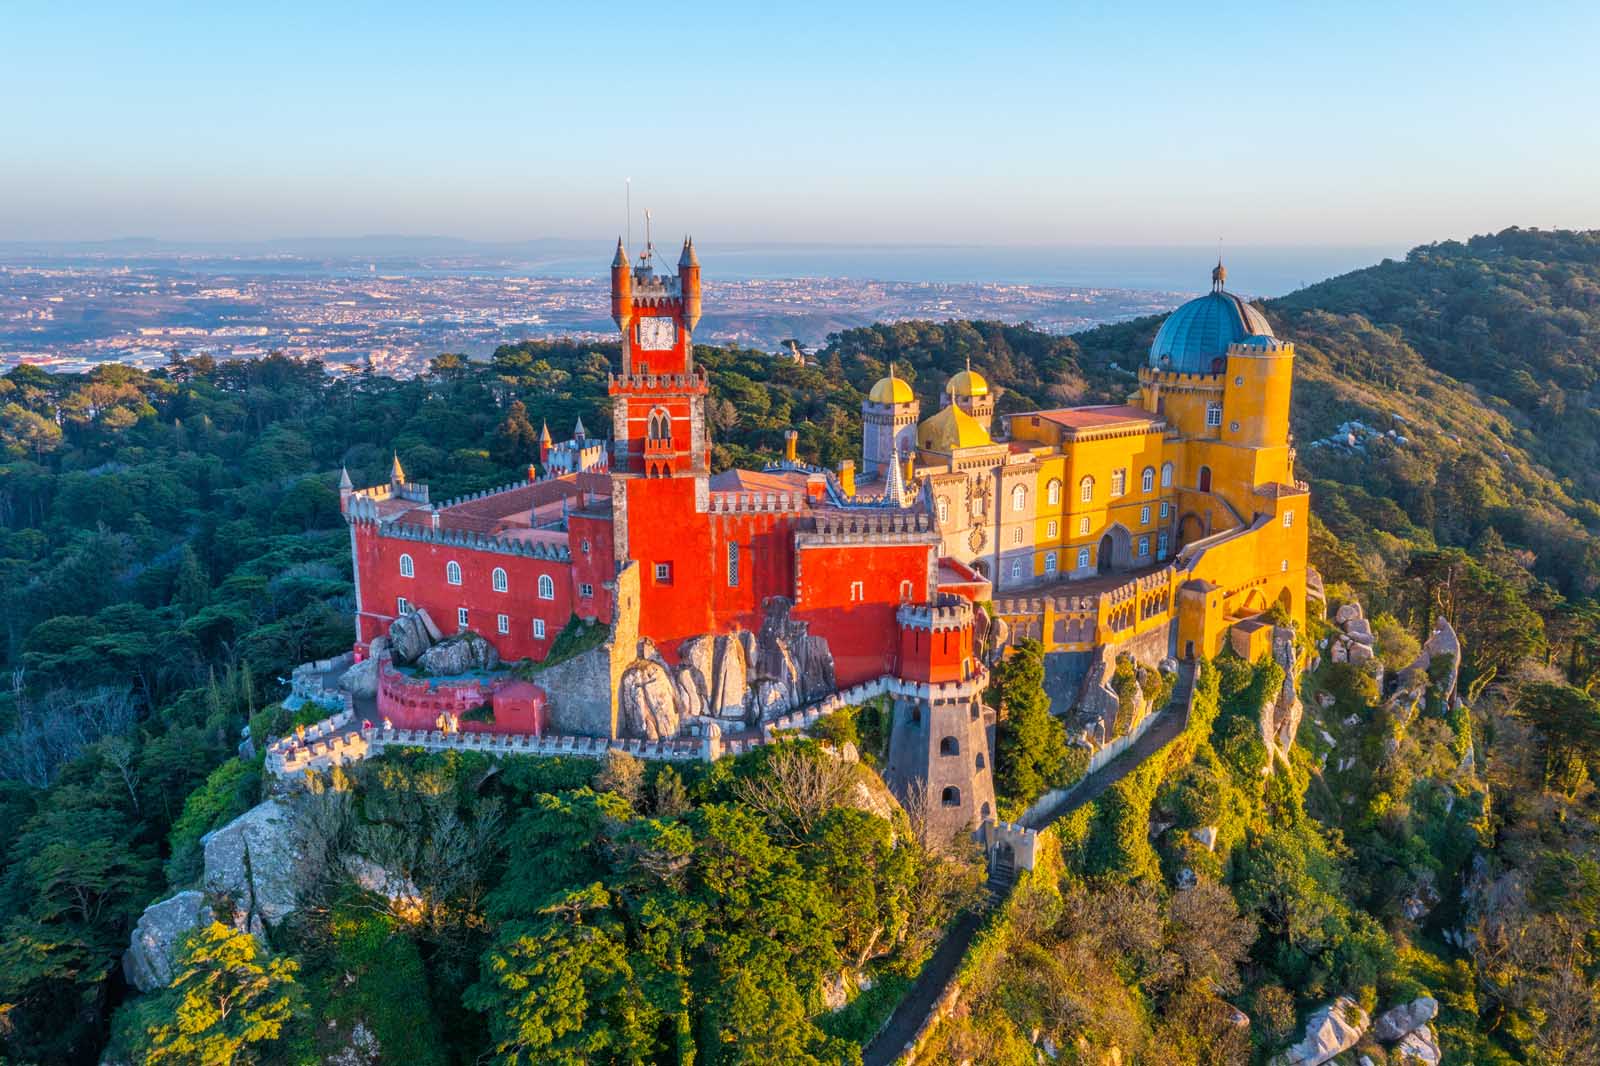 Sintra, Portugal